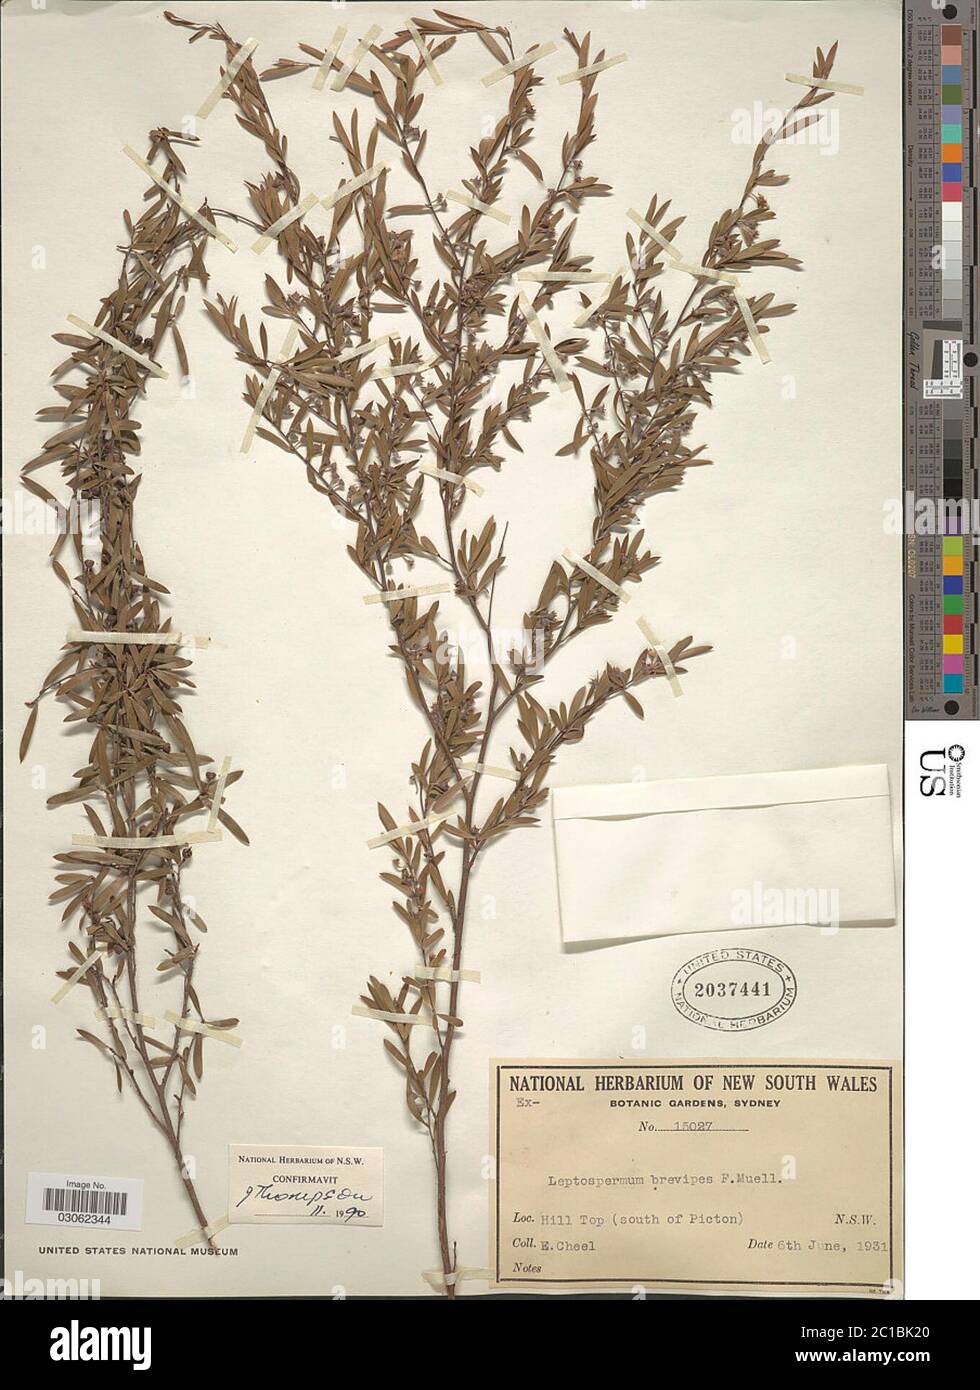 Leptospermum brevipes F Muell Leptospermum brevipes F Muell. Stock Photo